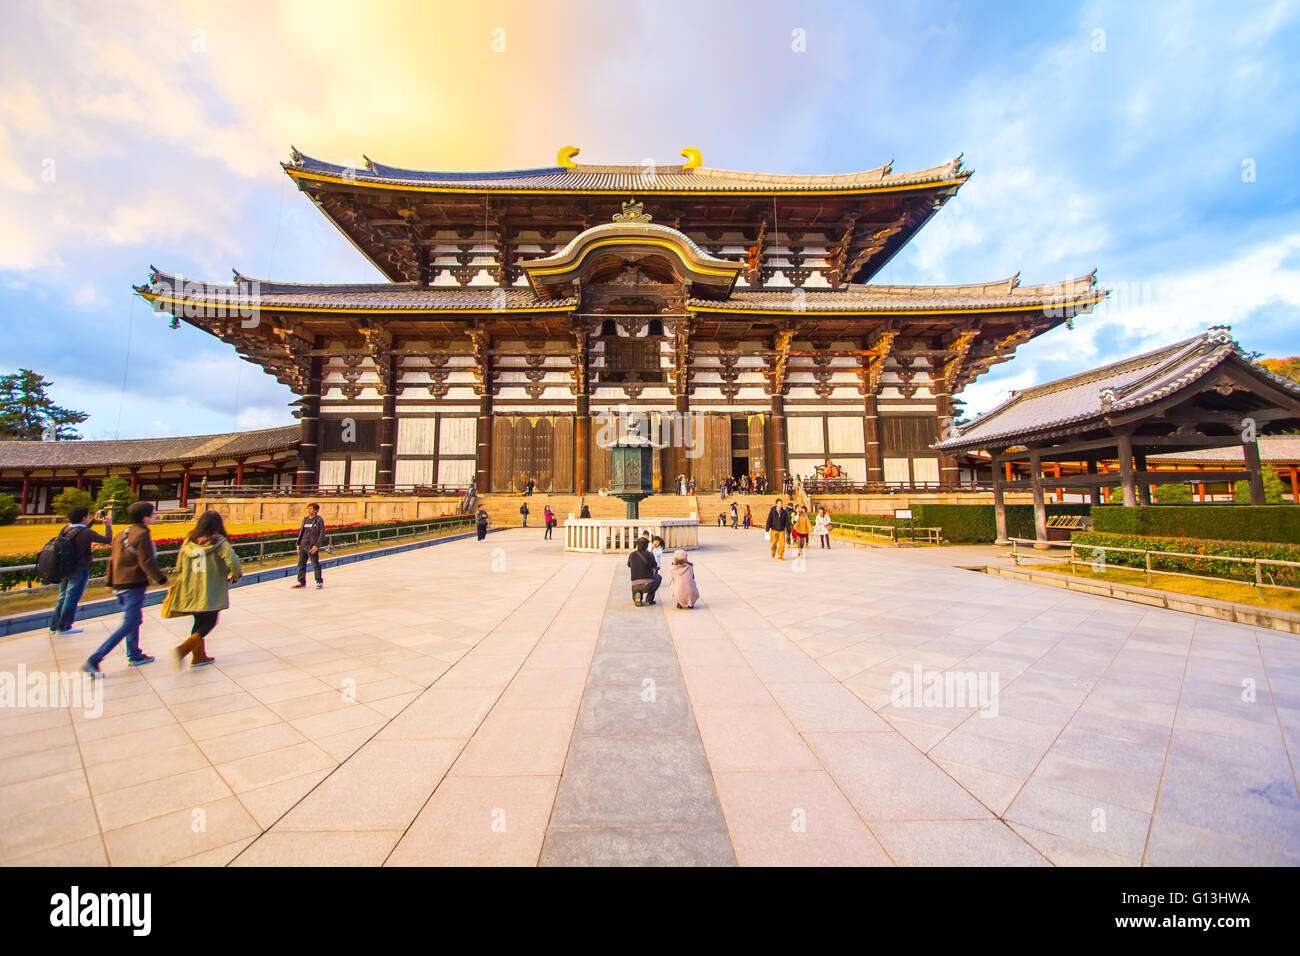 Nara, Giappone - 1 Dicembre 2012: Tempio di Todai-ji è un tempio buddista complessa, che una volta era uno dei potenti sette grandi Temp Foto Stock